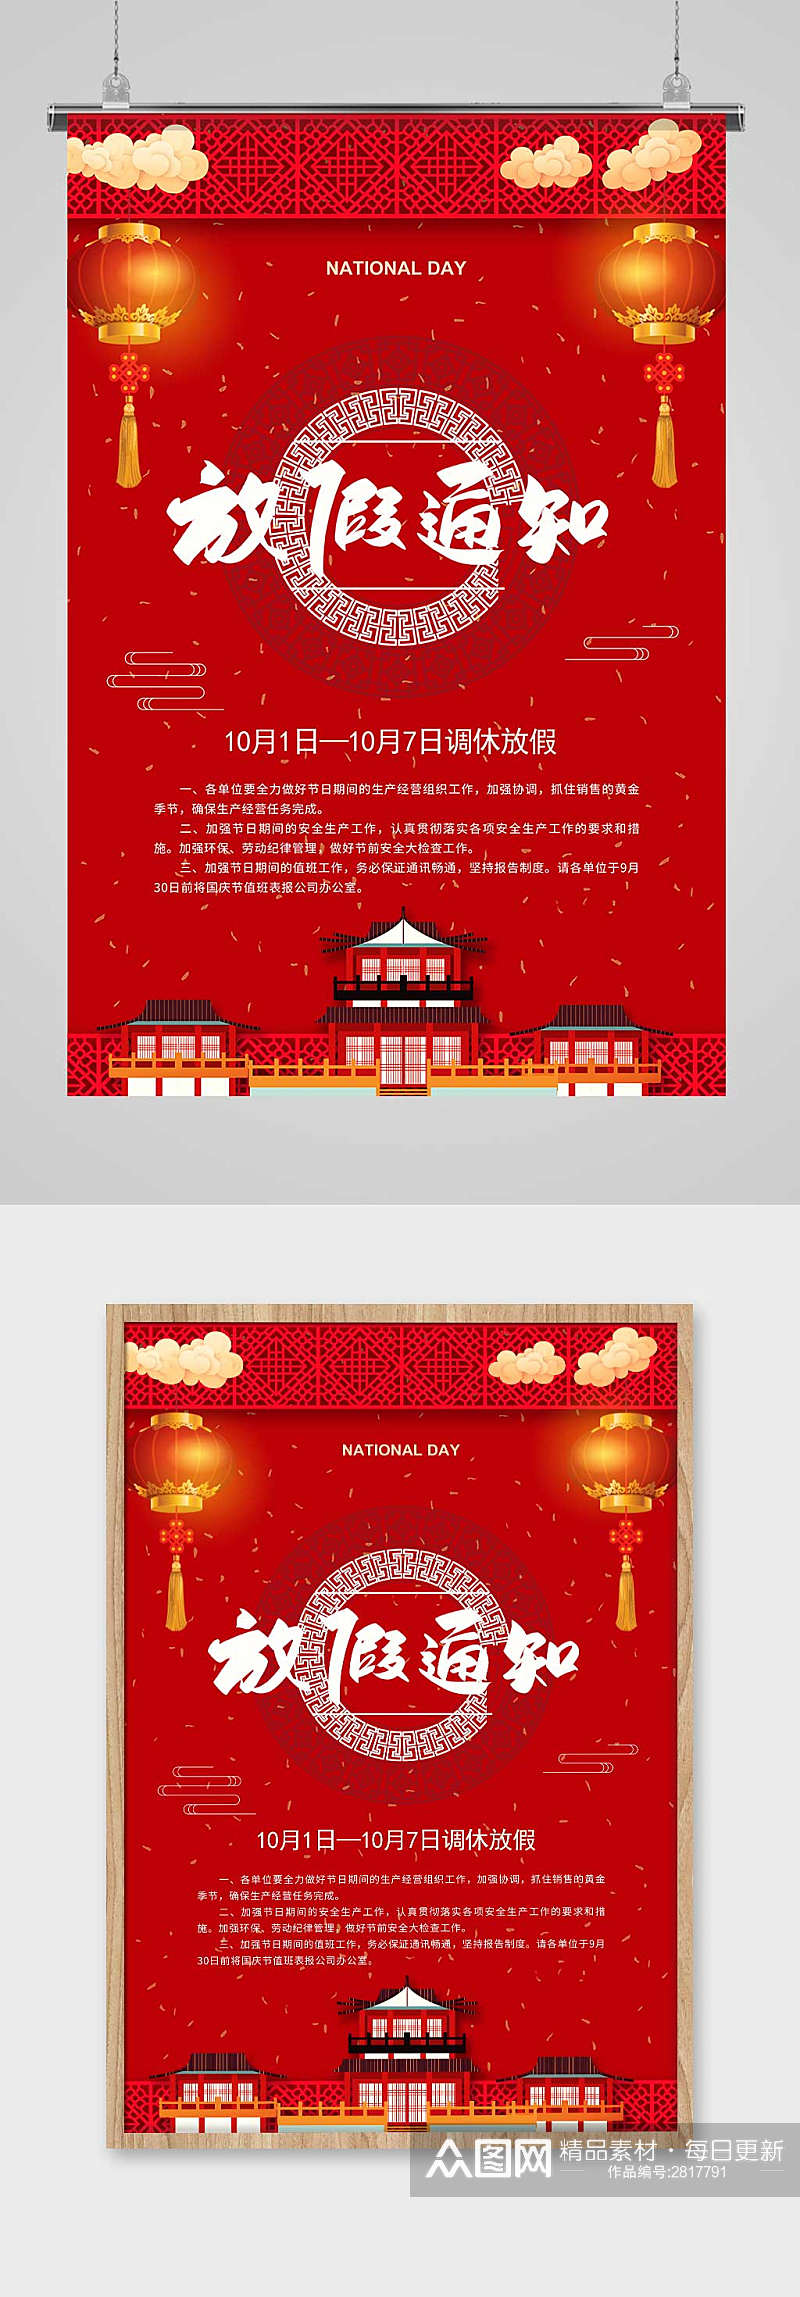 红色中国风卡通国庆节放假通知海报素材